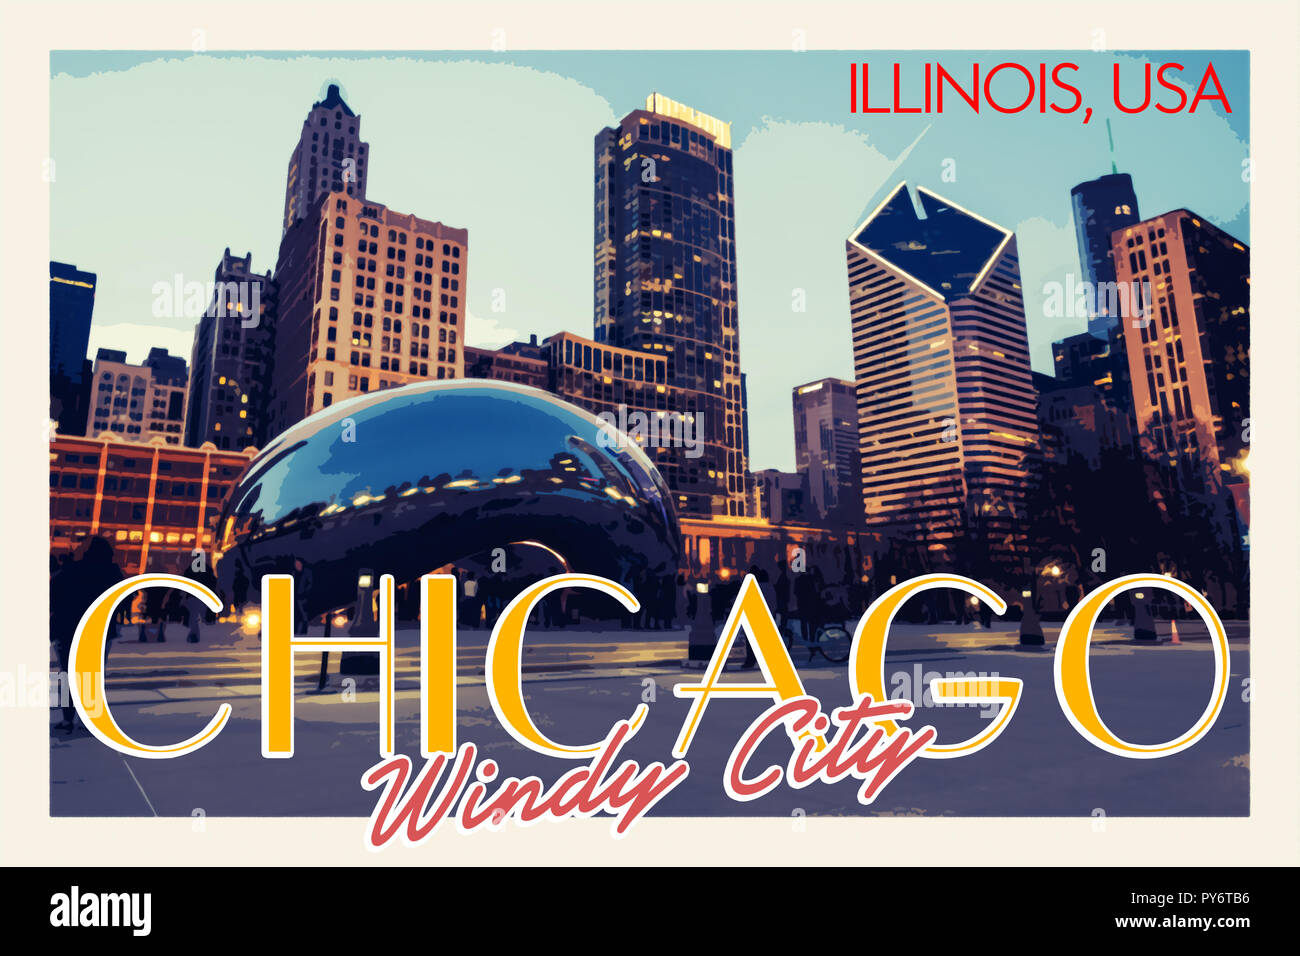 Chicago, USA Travel Poster v11a.jpg - PY6TEY Stock Photo